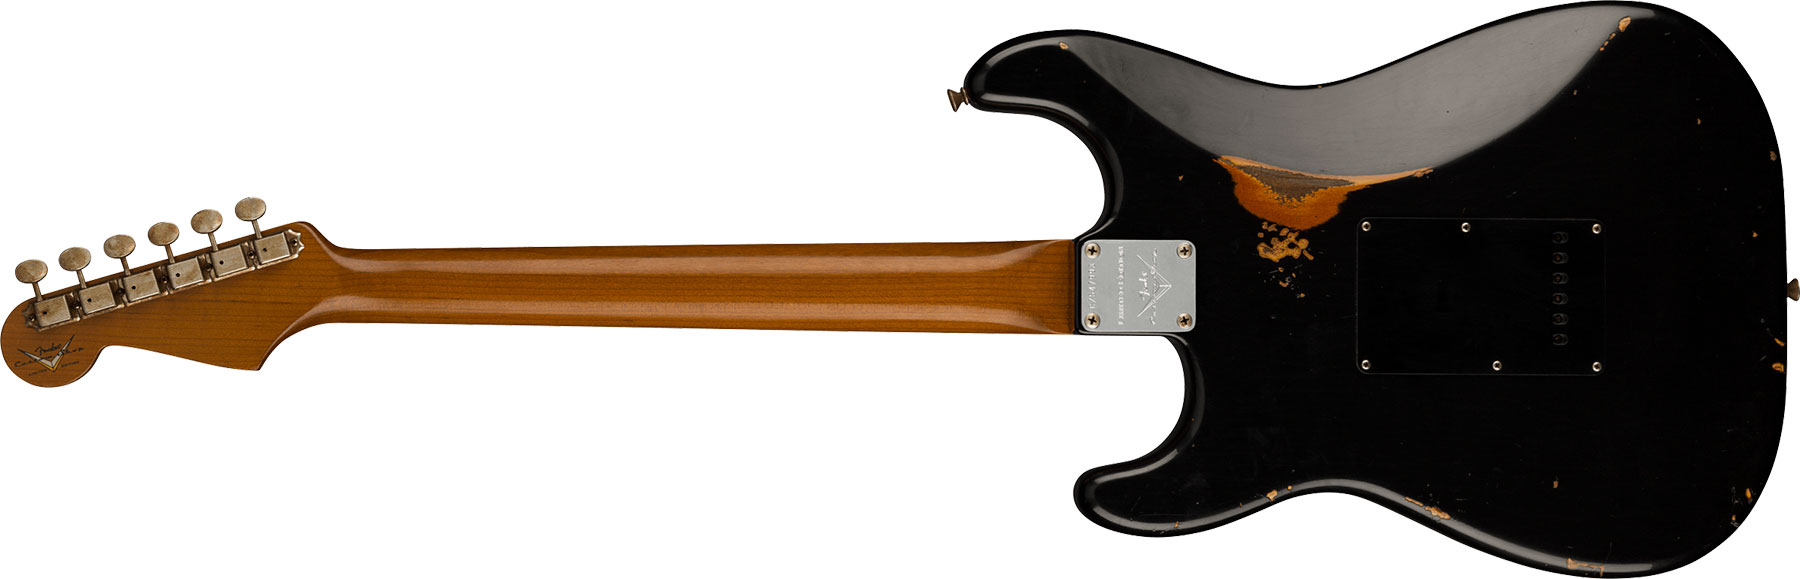 Fender Custom Shop Strat Dual Mag Ii Ltd Usa 3s Trem Rw - Relic Black Over 3-color Sunburst - E-Gitarre in Str-Form - Variation 1